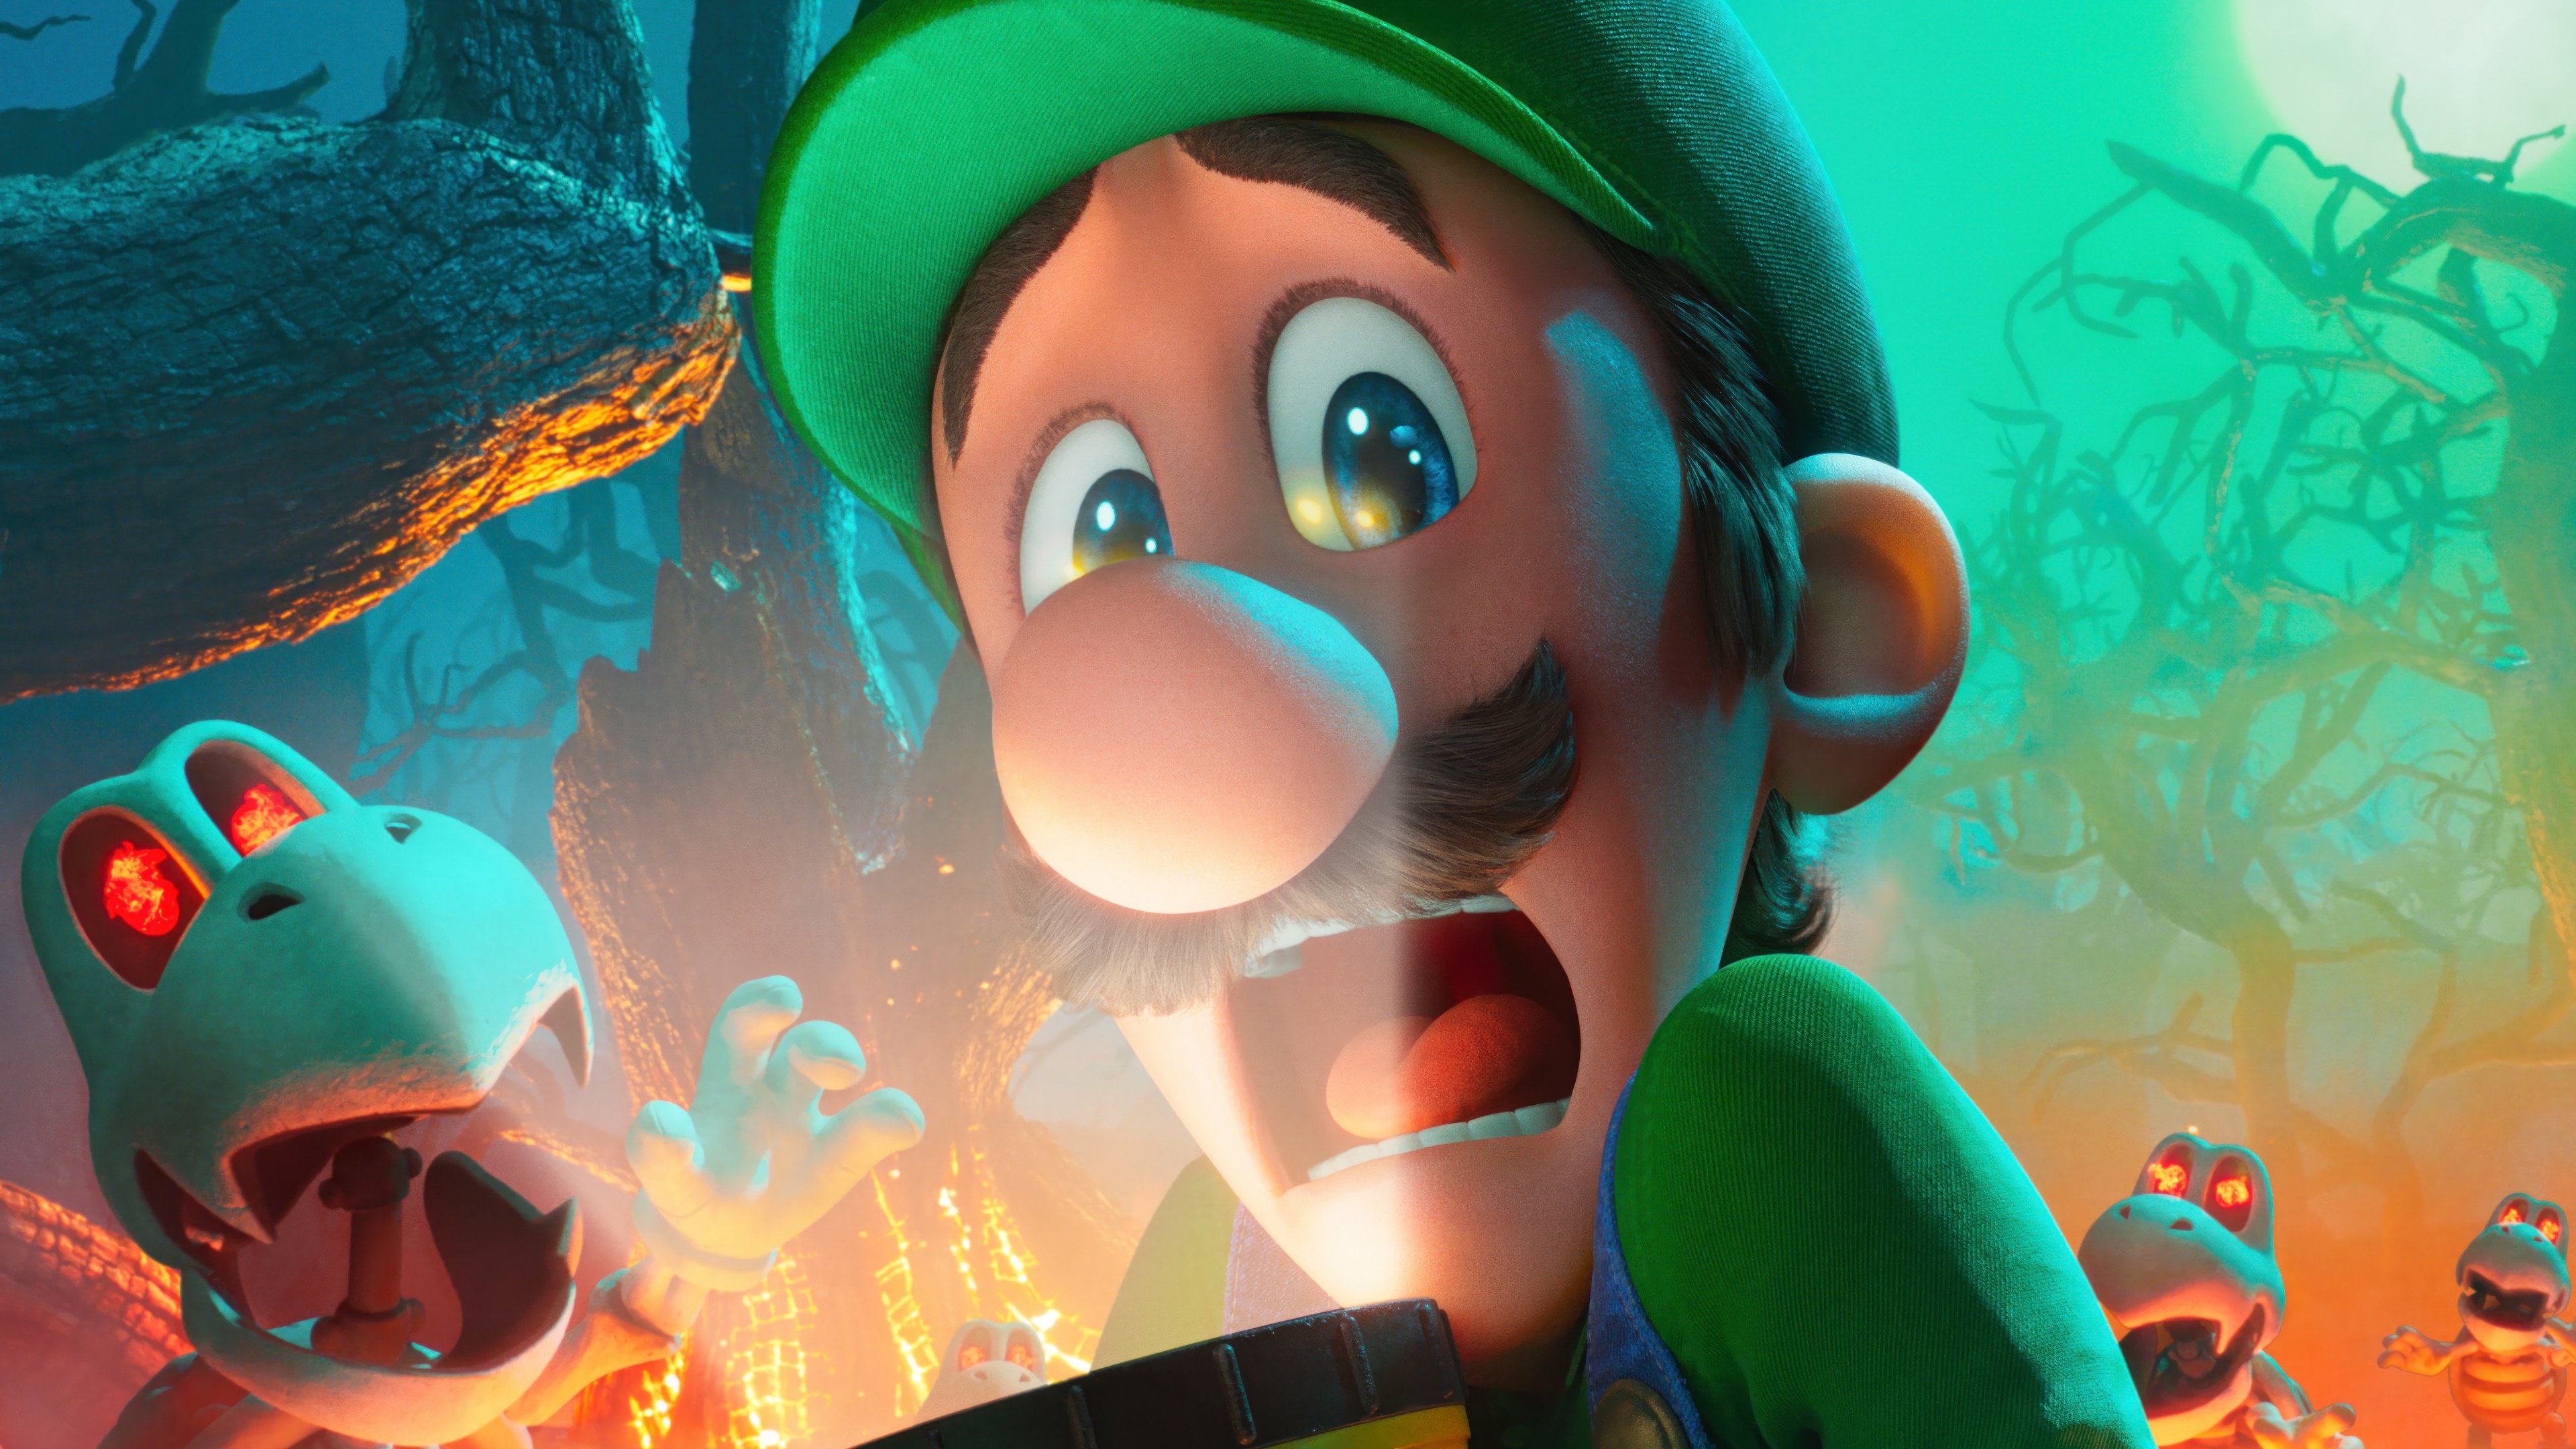 Fondos de pantalla Luigi The Super Mario Bros